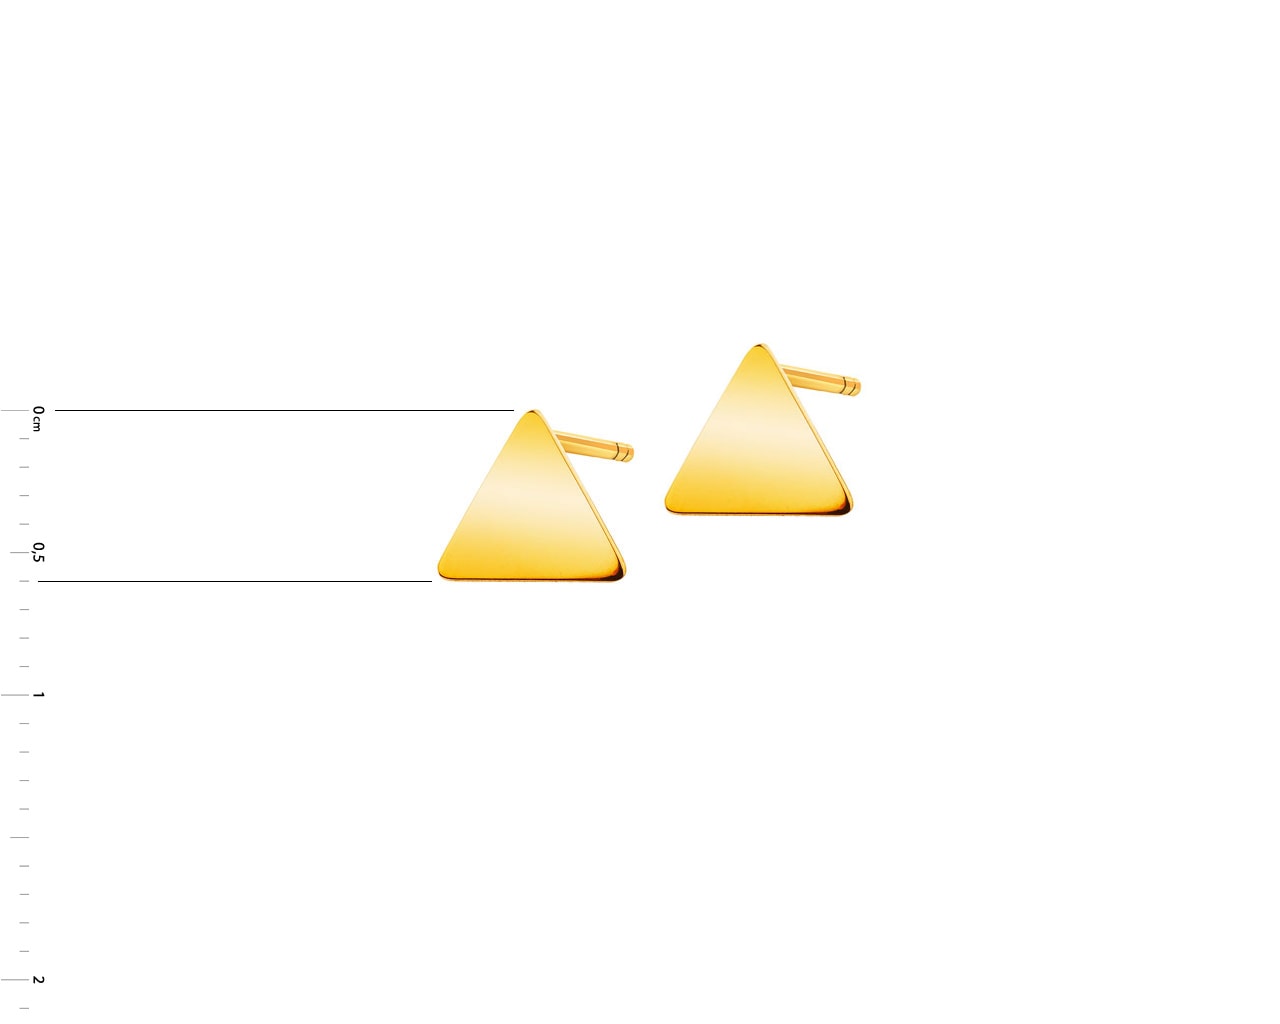 Złote kolczyki - trójkąty